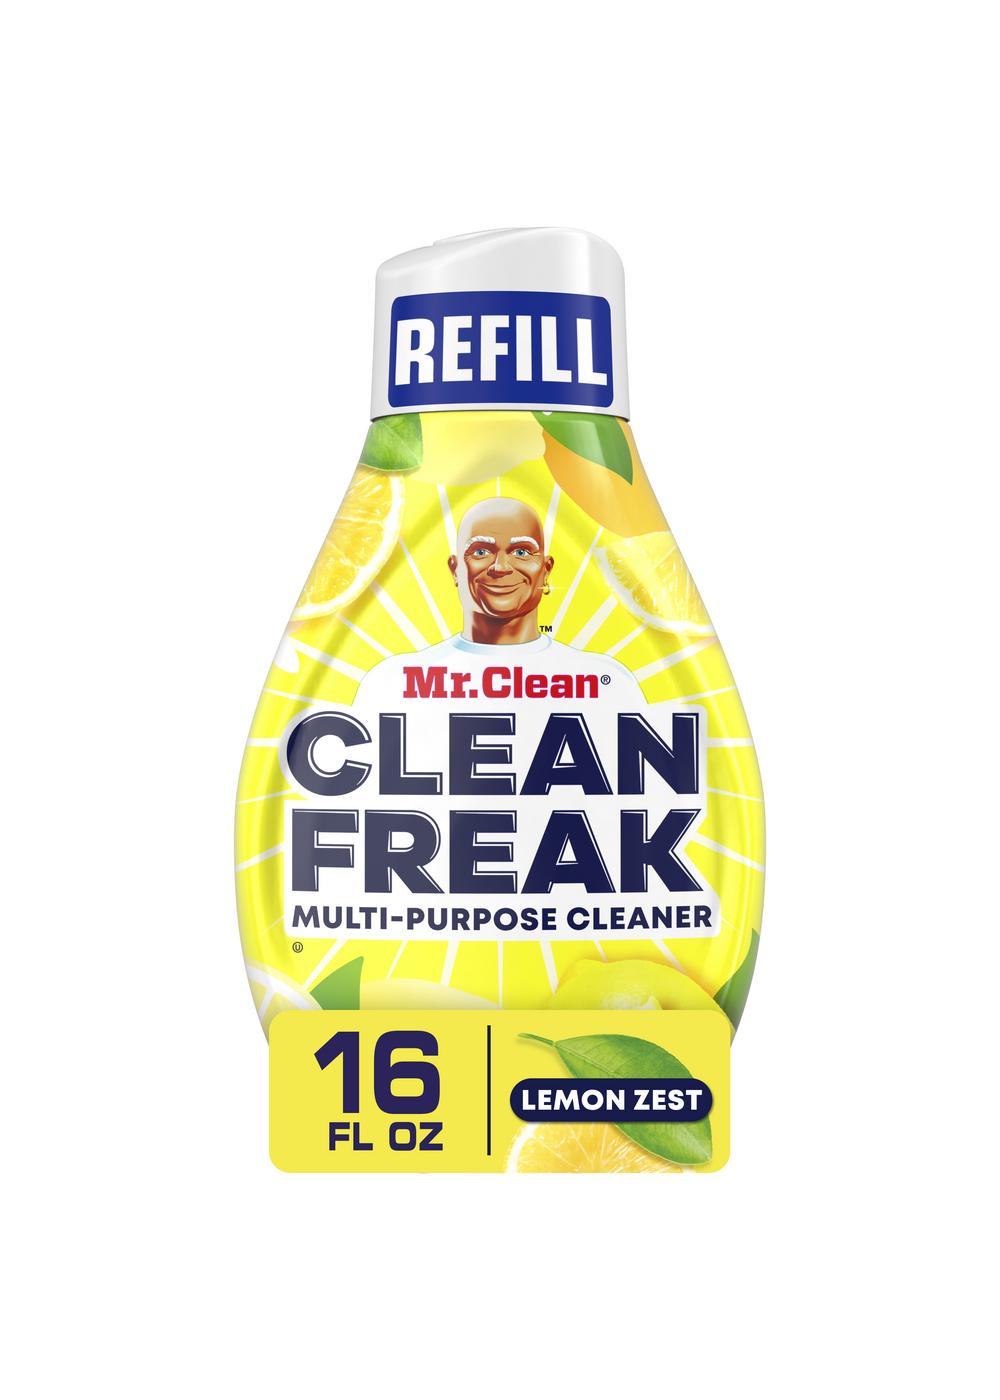 Mr. Clean Clean Freak Lemon Zest Deep Cleaning Mist Refill - Shop